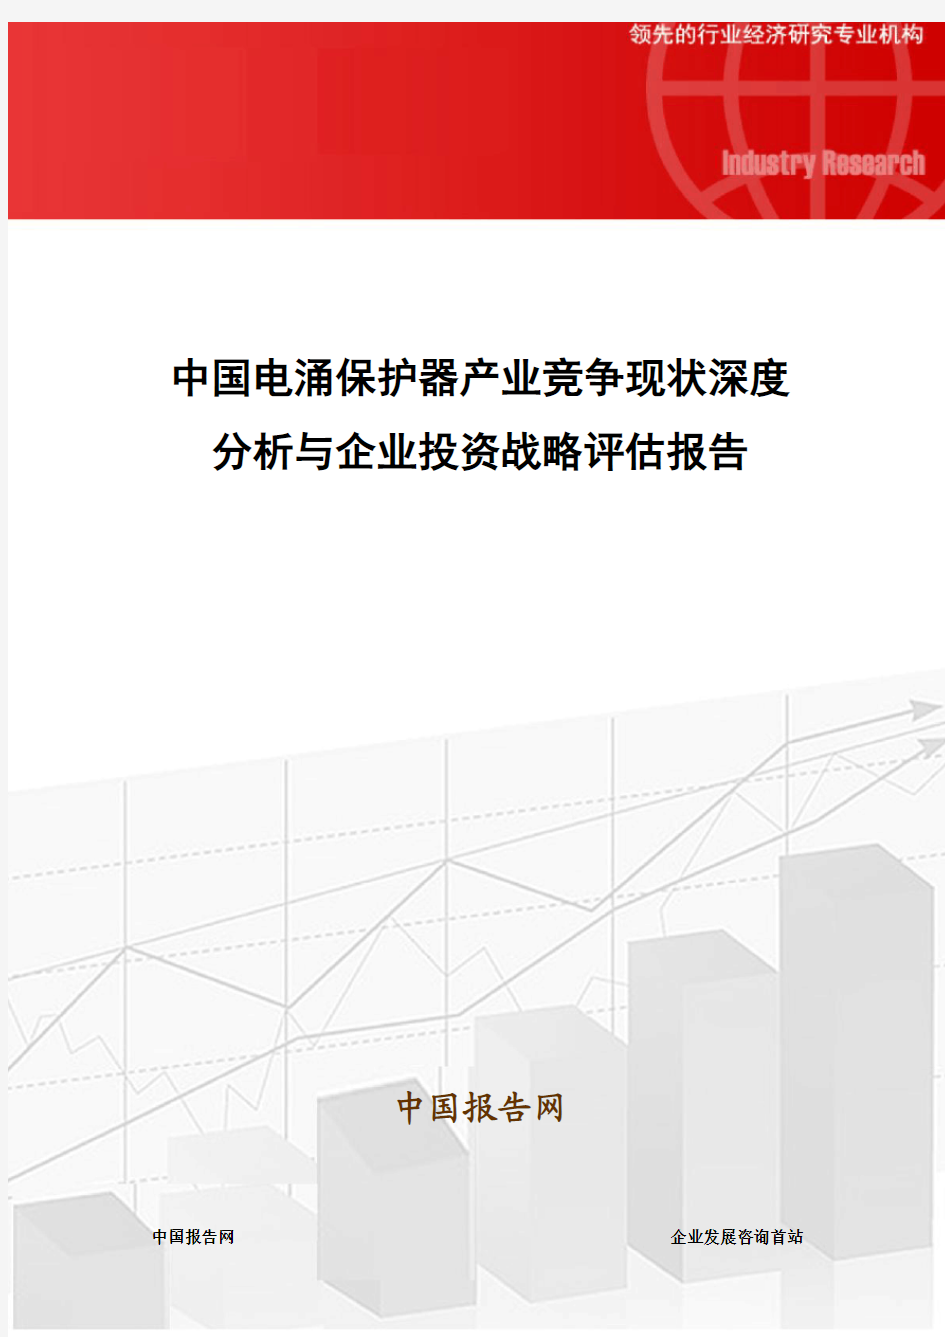 中国电涌保护器产业竞争现状深度分析与企业投资战略评估报告